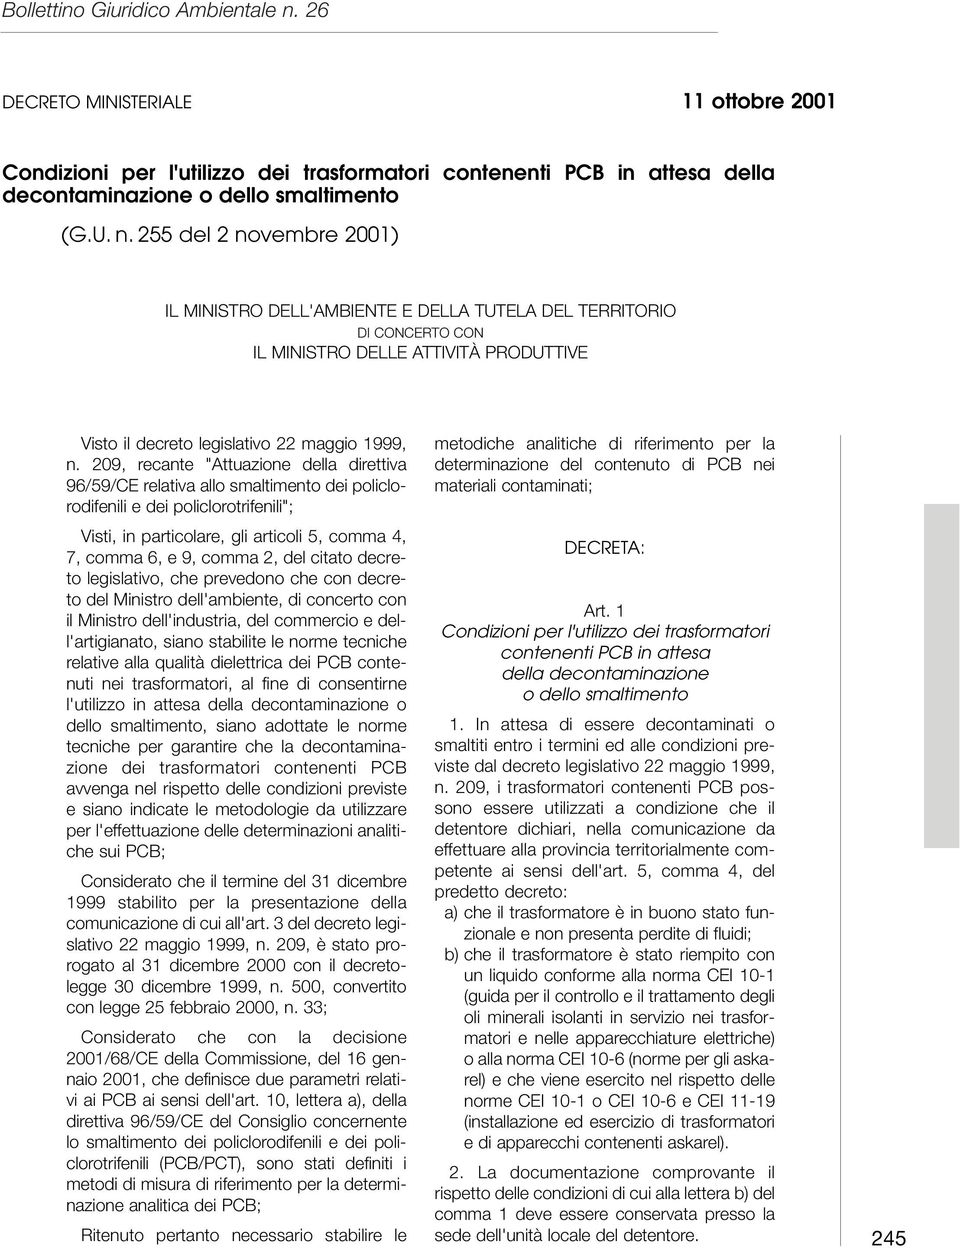 209, recante "Attuazione della direttiva 96/59/CE relativa allo smaltimento dei policlorodifenili e dei policlorotrifenili"; Visti, in particolare, gli articoli 5, comma 4, 7, comma 6, e 9, comma 2,